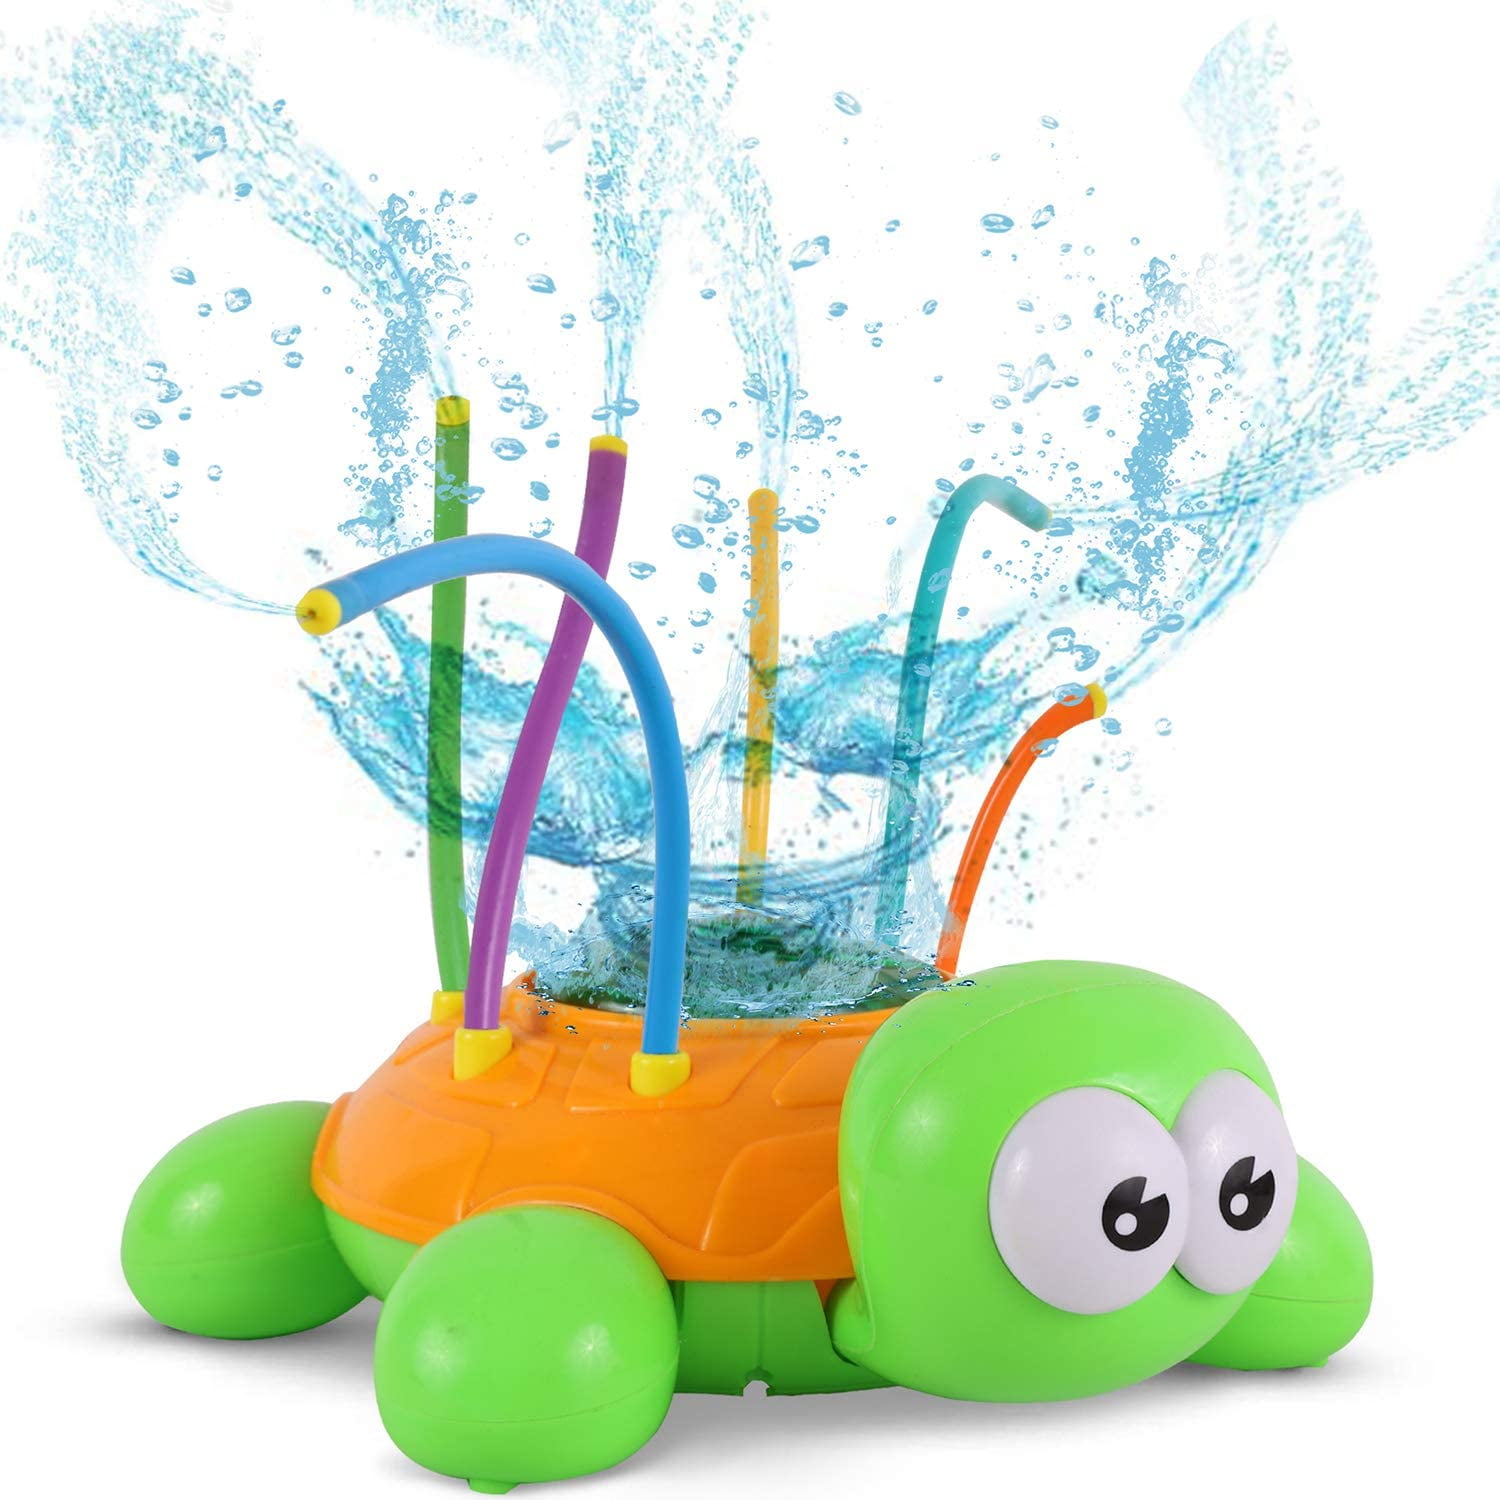 MAOJIE Outdoor Water Spray Sprinkler for Kids Backyard Spinning Ladybug Sprinkler Toy Splashing Fun